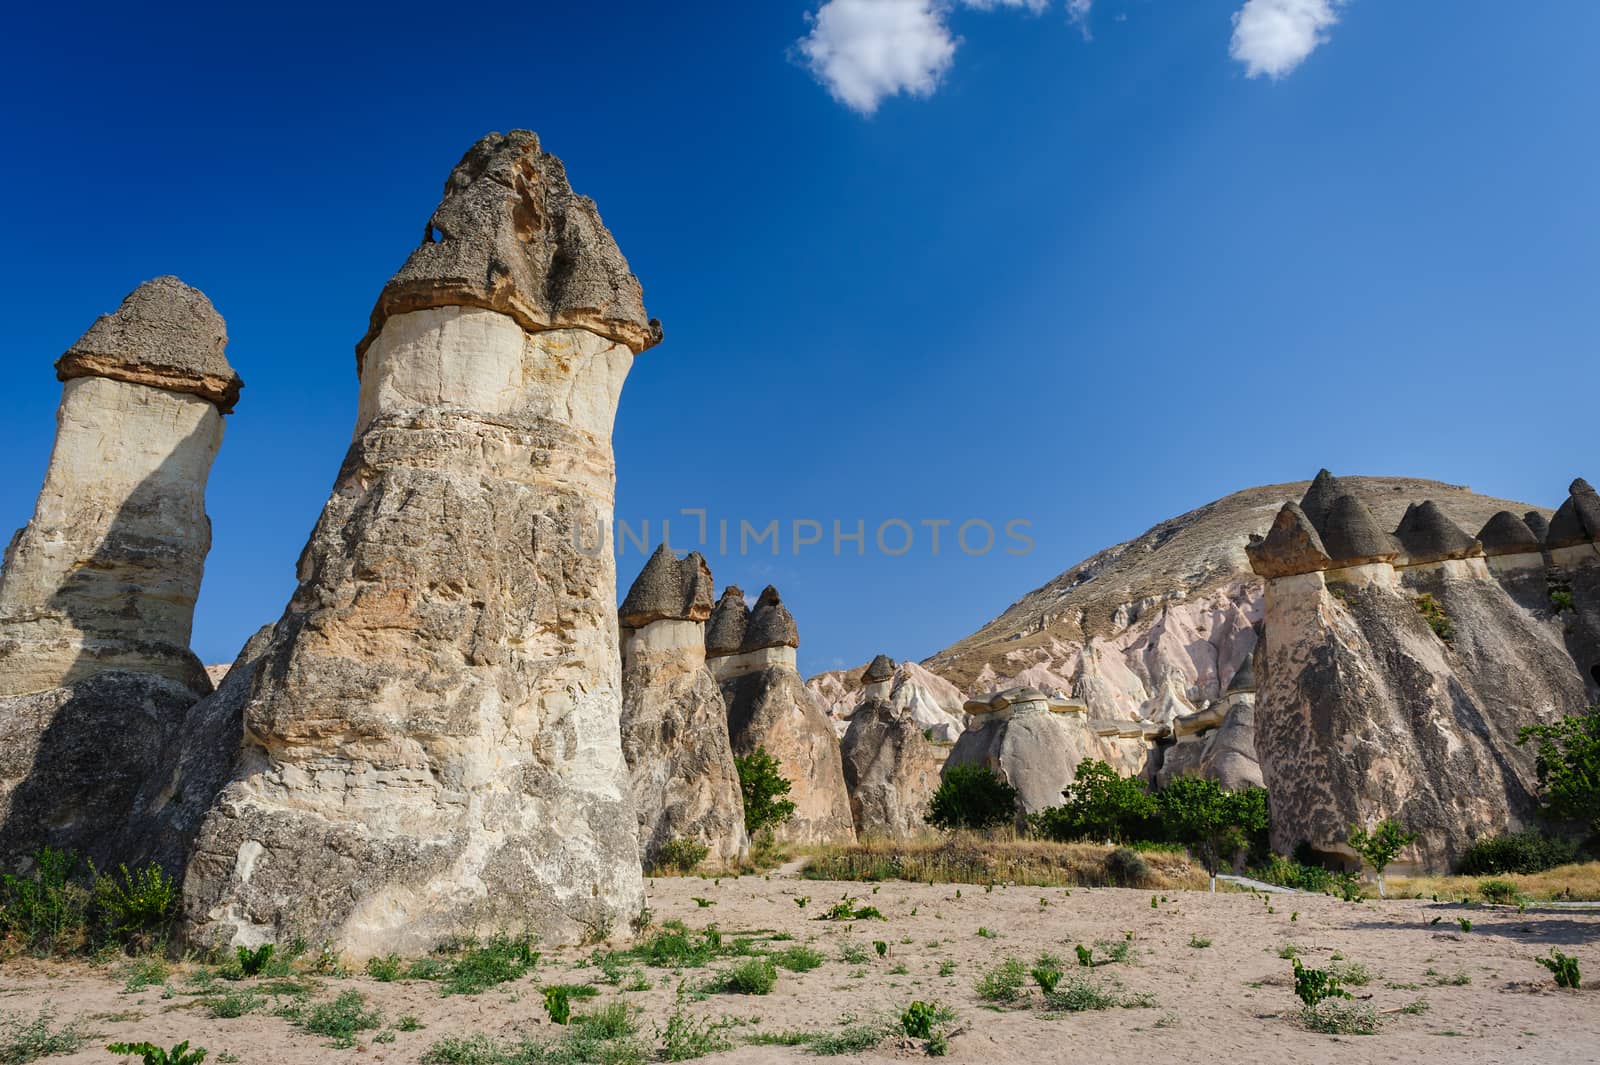 Landscape with bizzare tufa rocks in Cappadocia, Turkey